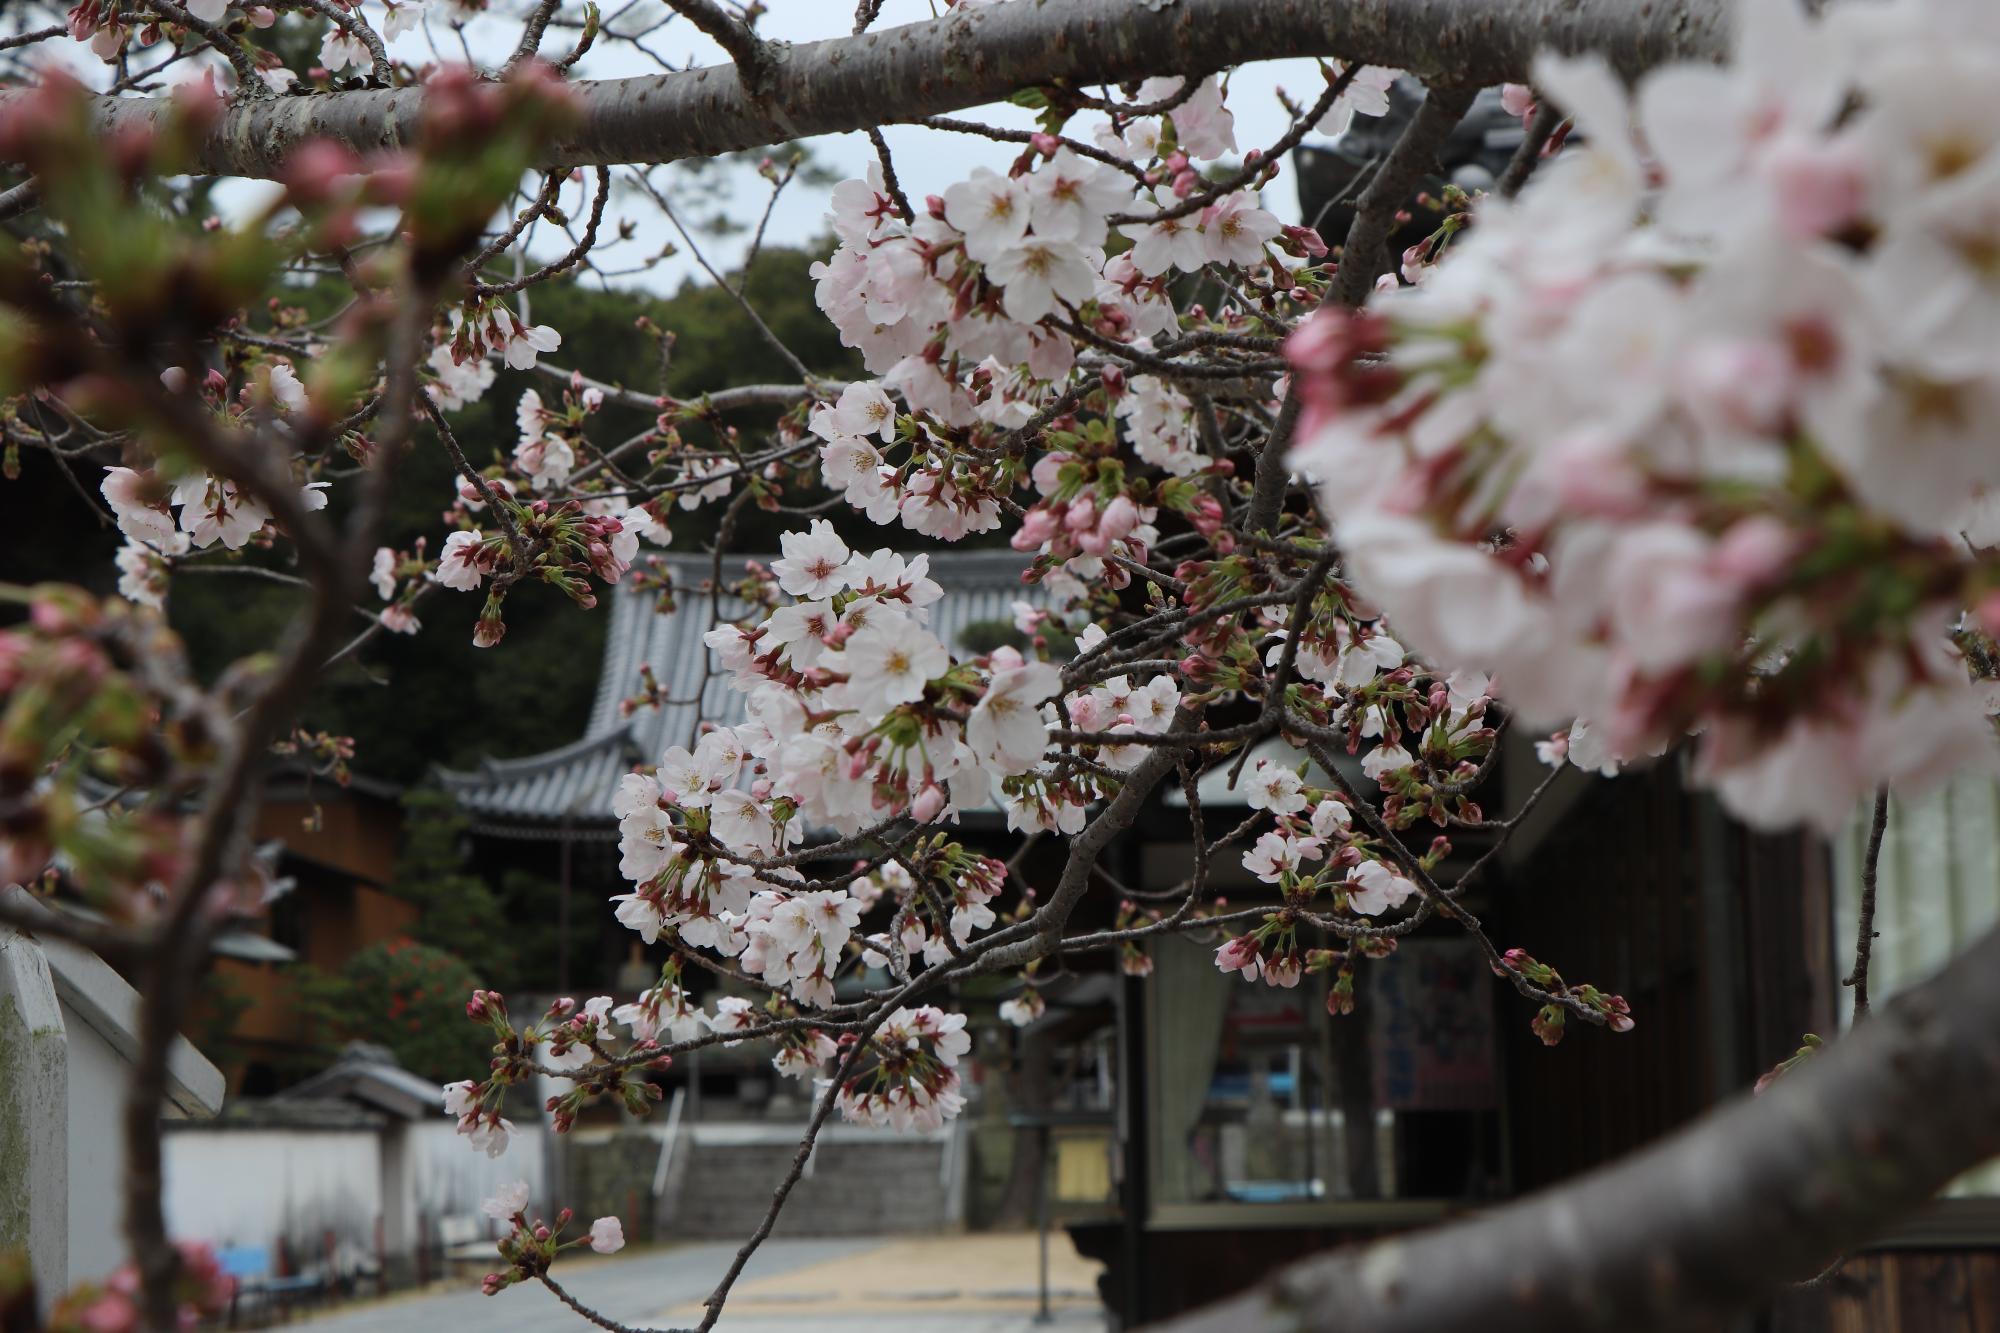 與田寺の境内に咲いている桜の花のズーム写真